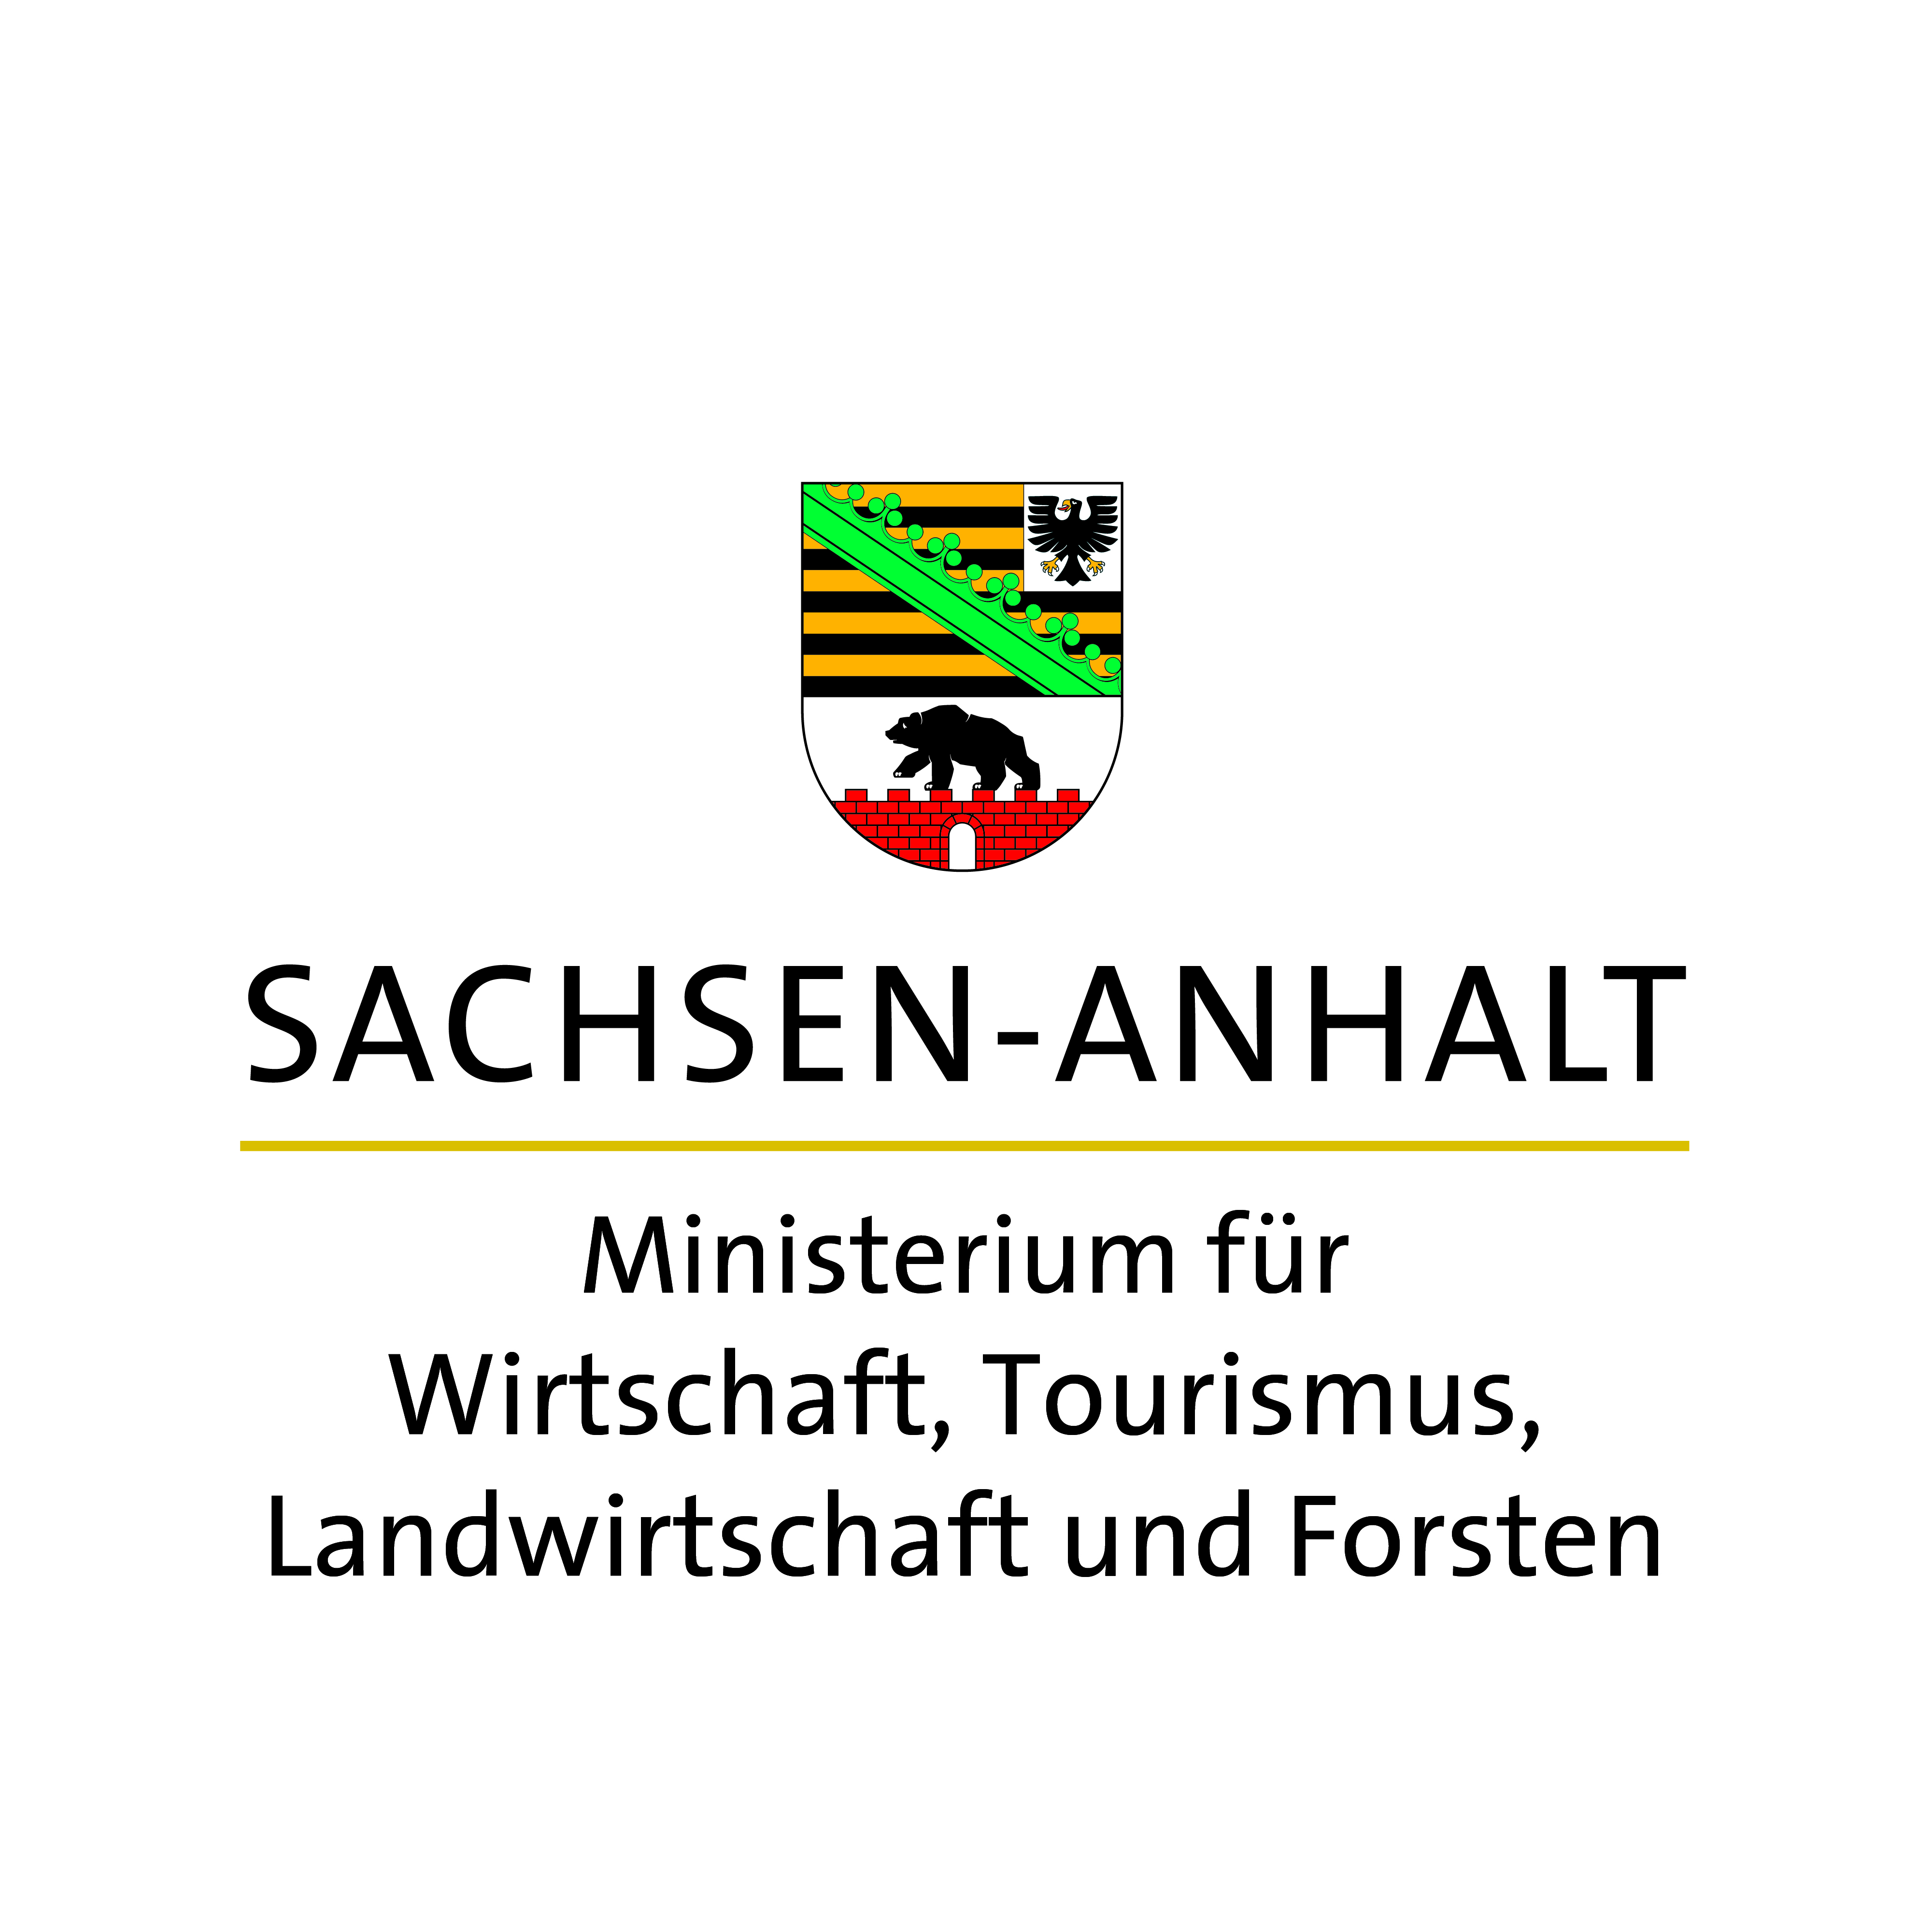 Ministerium für Wirtschaft, Tourismus, Landwirtschaft und Forsten des Landes Sachsen-Anhalt